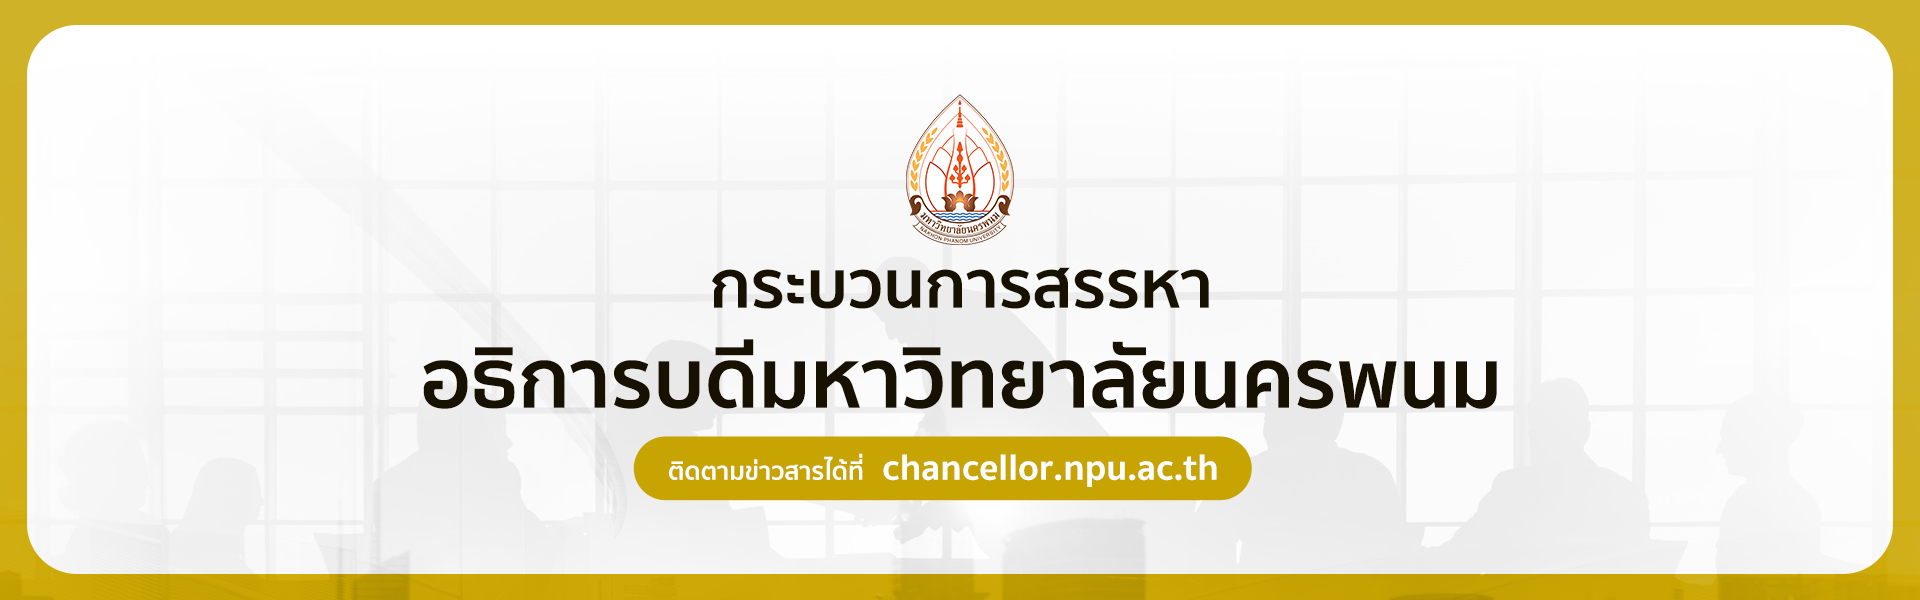 Nakhon Phanom University